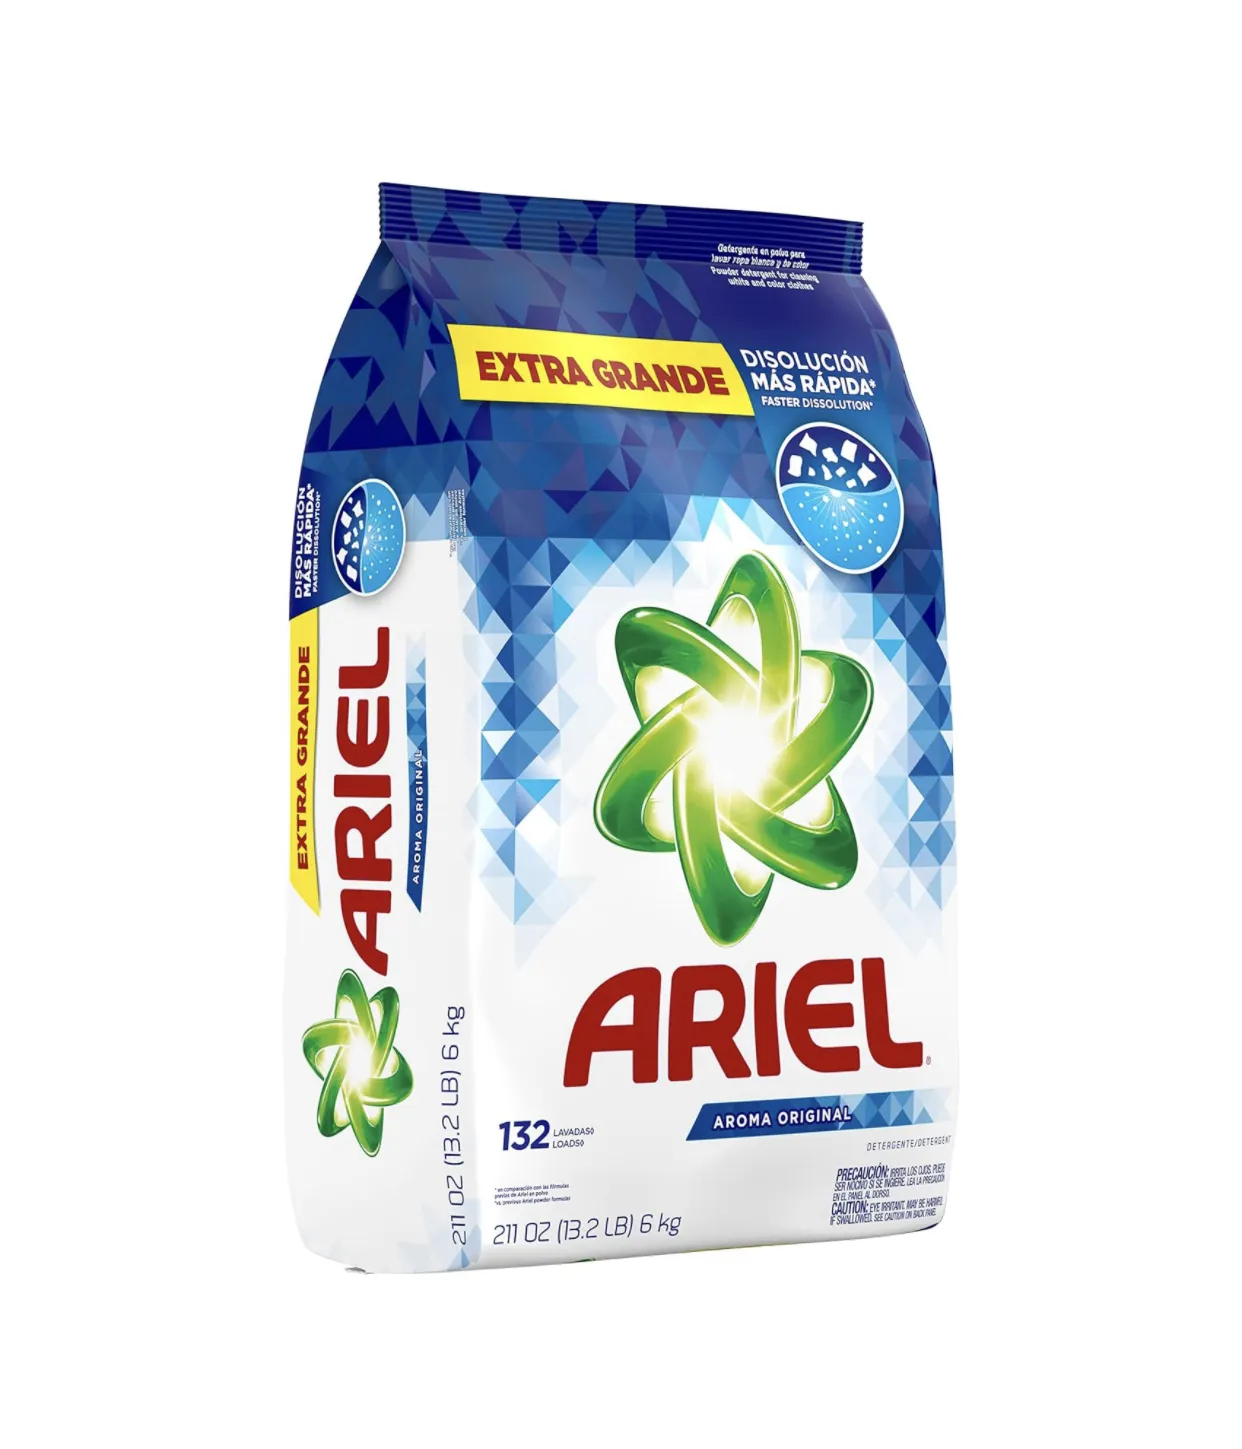 Detergente em pó Ariel mais vendido, perfume original de alta eficiência, 211 onças, 132 cargas, 13,19 libras, 6kg (1pk)